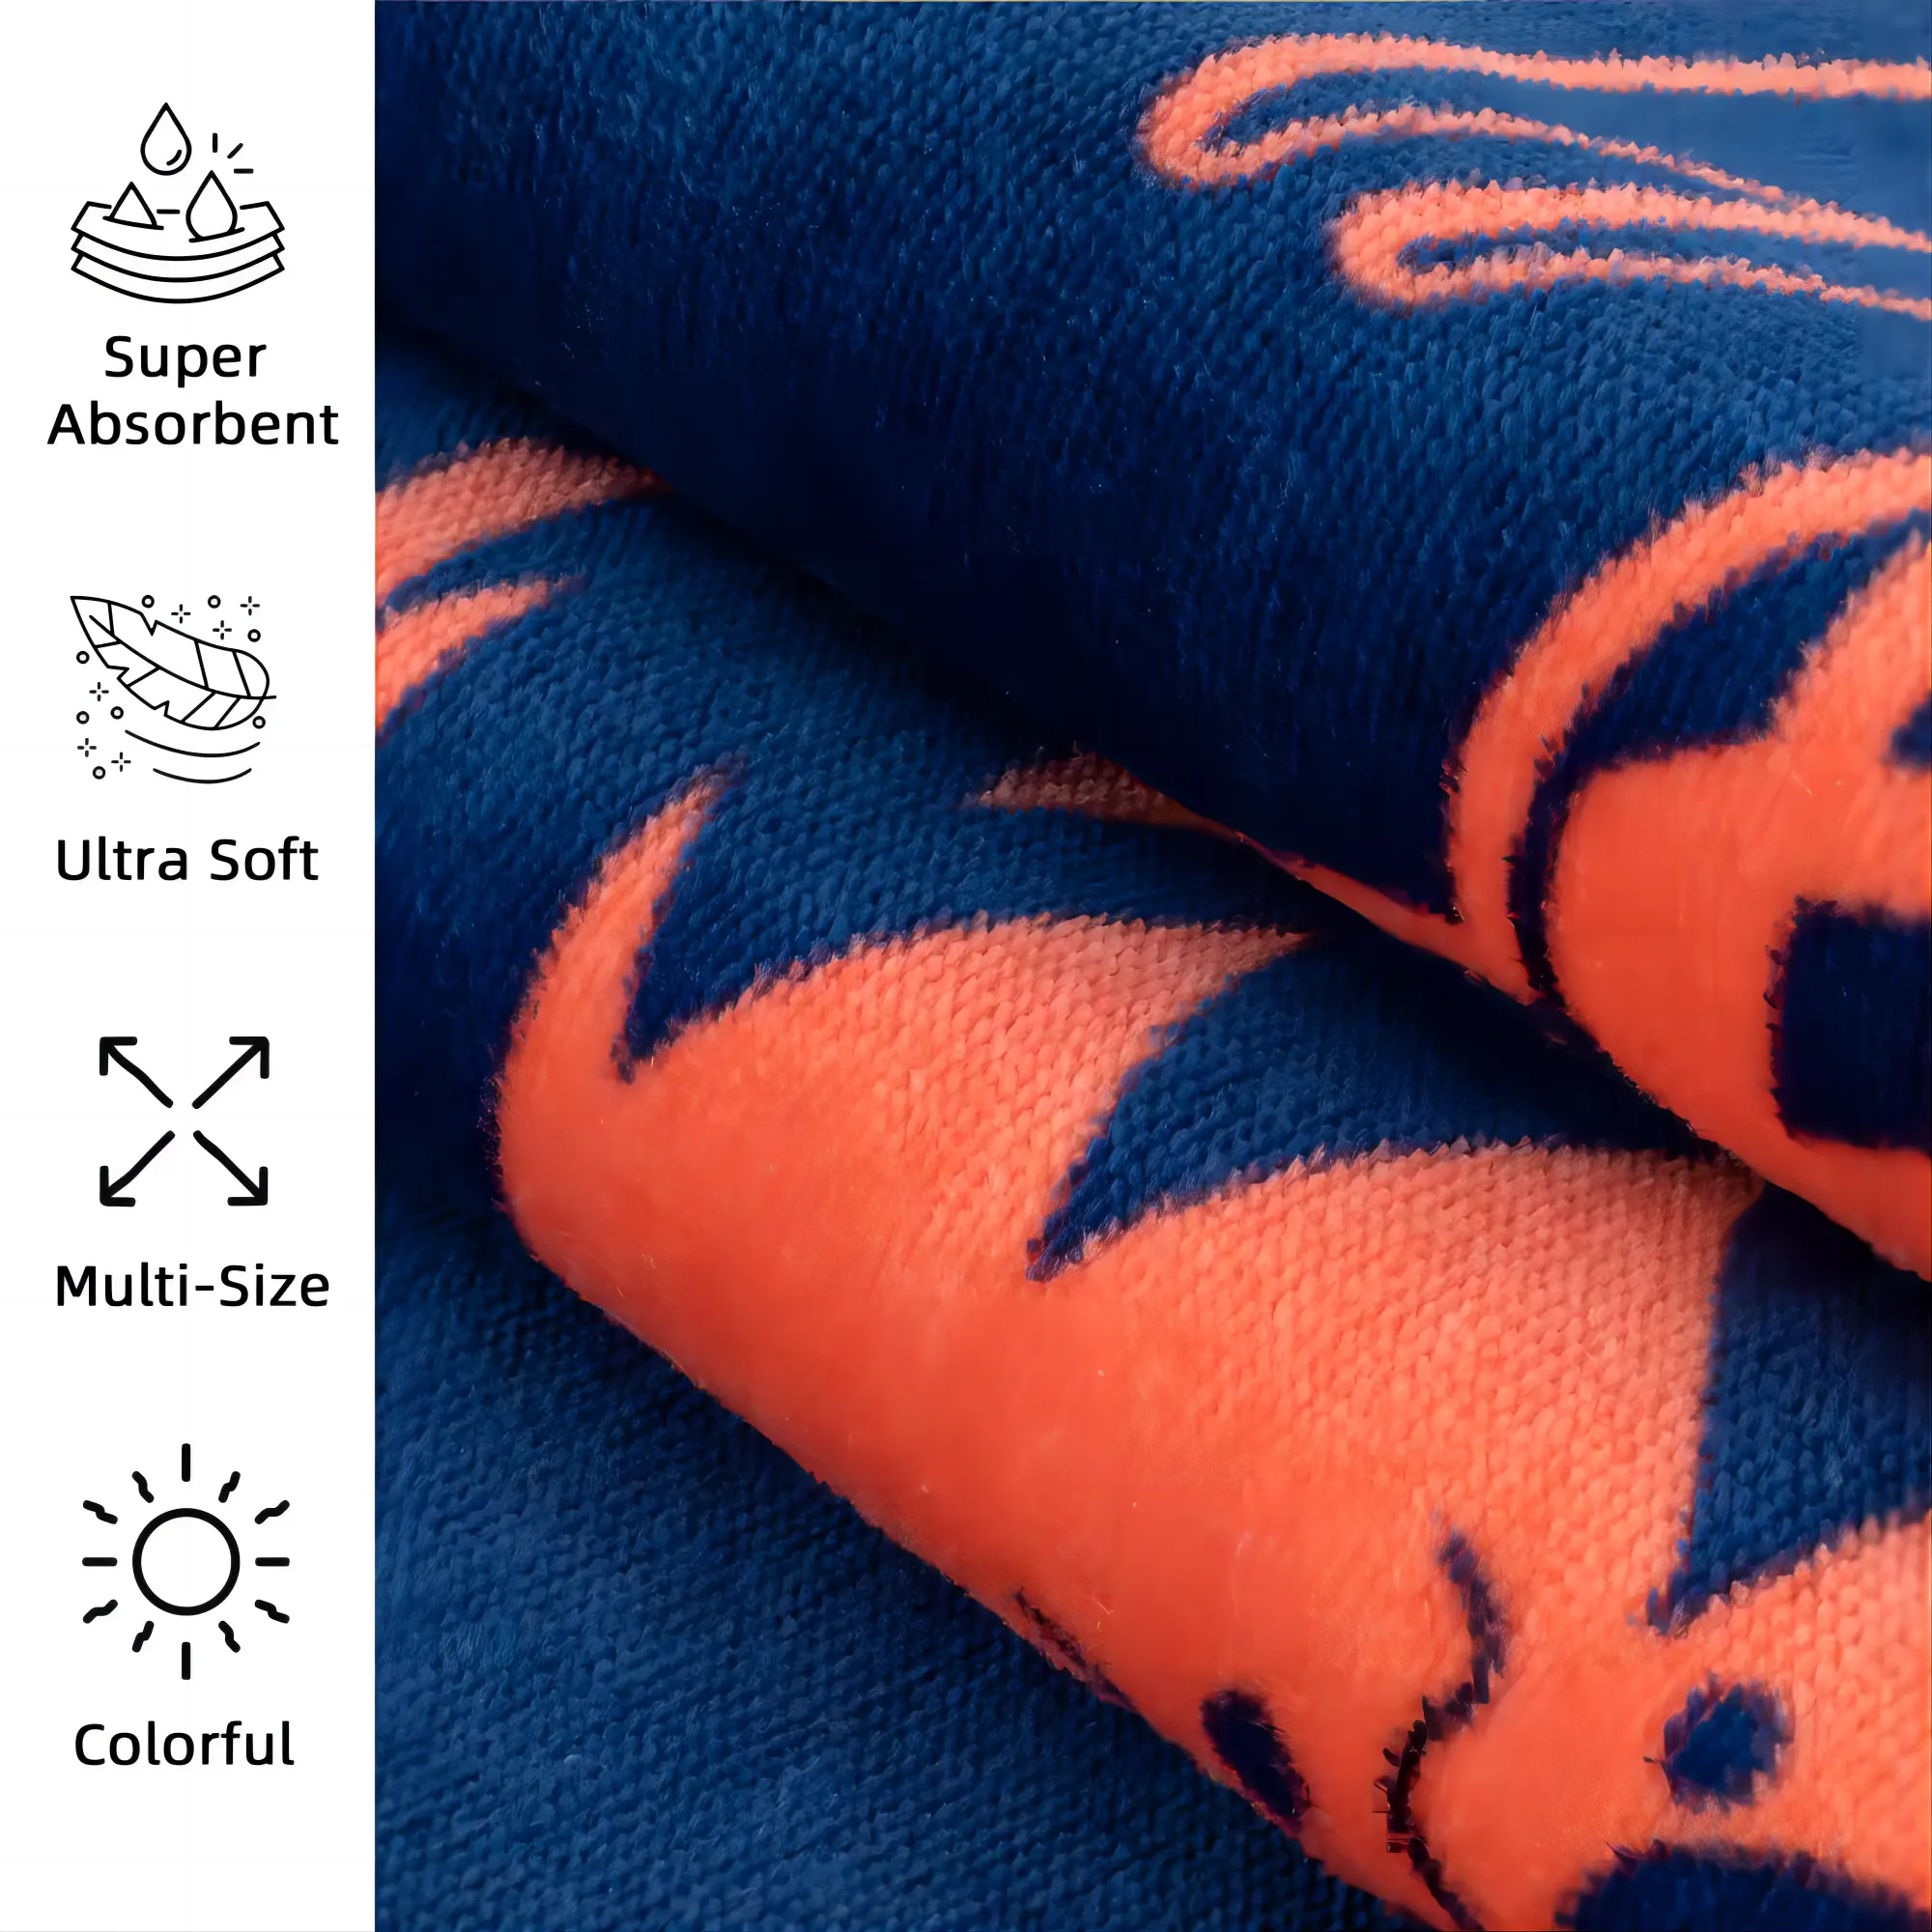 Super haute qualité 100% coton Jacquard personnalisé surdimensionné Sublimation imprimé serviette de plage Logo personnalisé microfibre plage